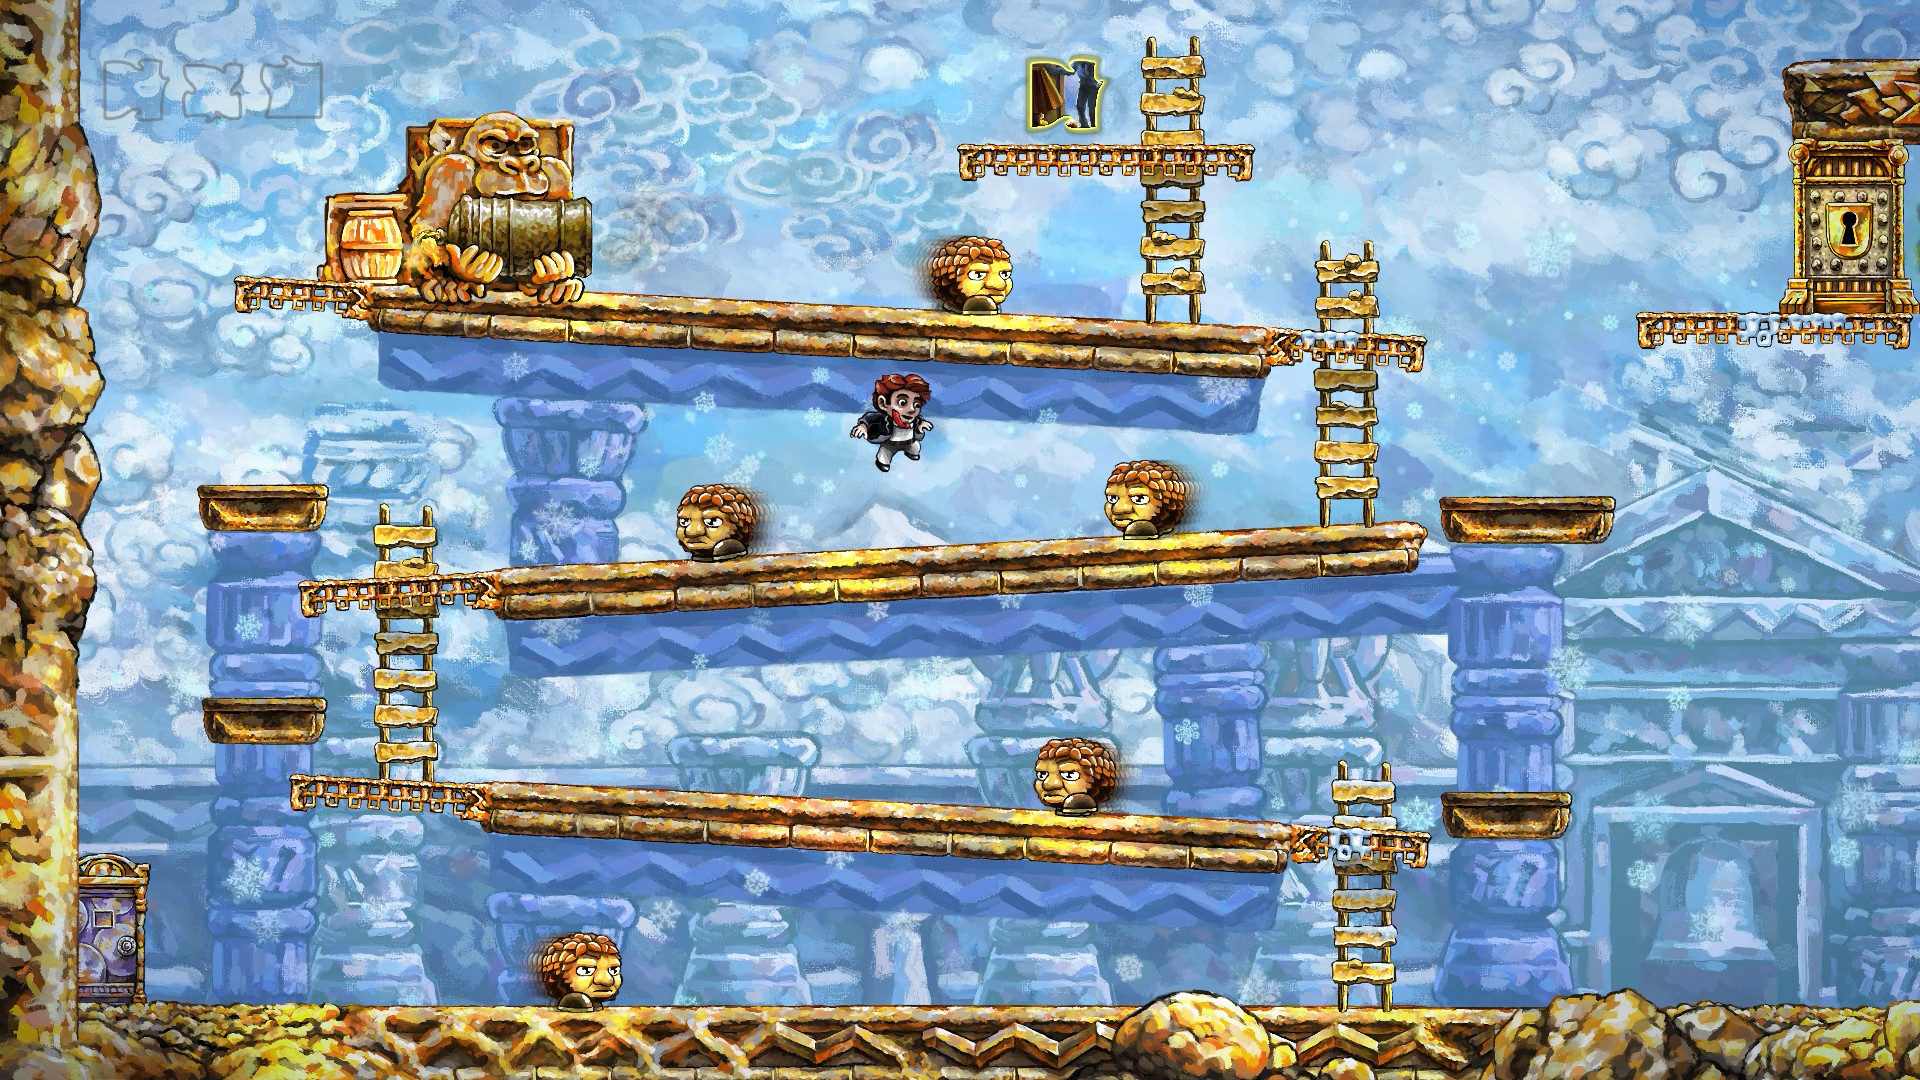 Красивое синее рисованное изображение из уровня игры Braid, мимикрирующее Donkey Kong, упрямого обезьяну держателя бочек и прочего.